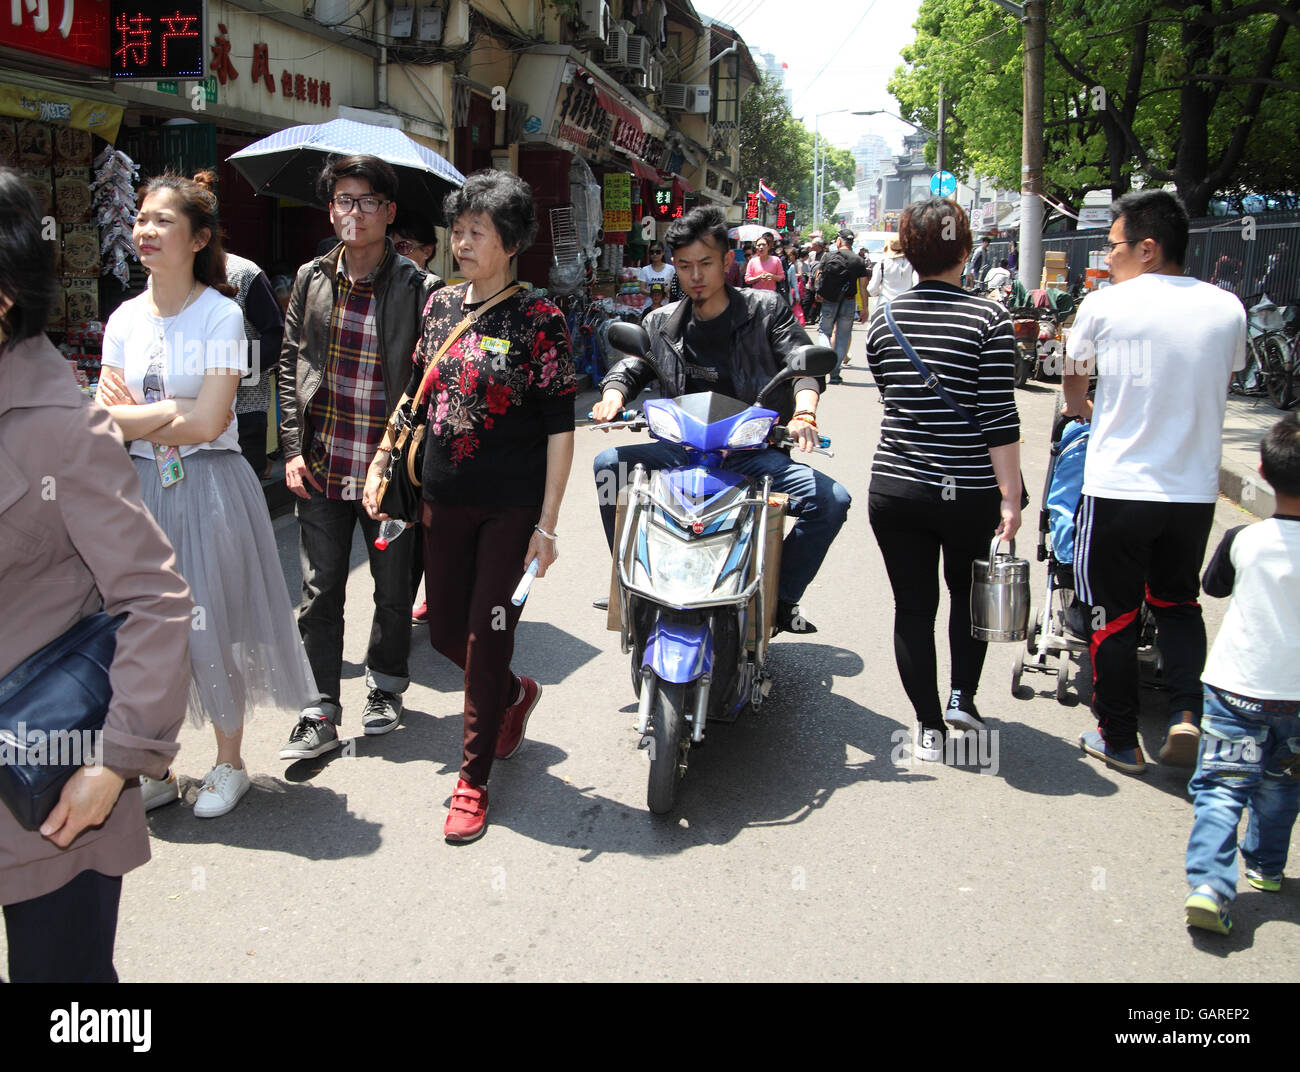 Un Chinois est équitation son scooter, manoeuvres dans la foule entre les piétons d'une scène de rue typiquement chinois. Shanghai, Chine. 30.04.2016. Banque D'Images